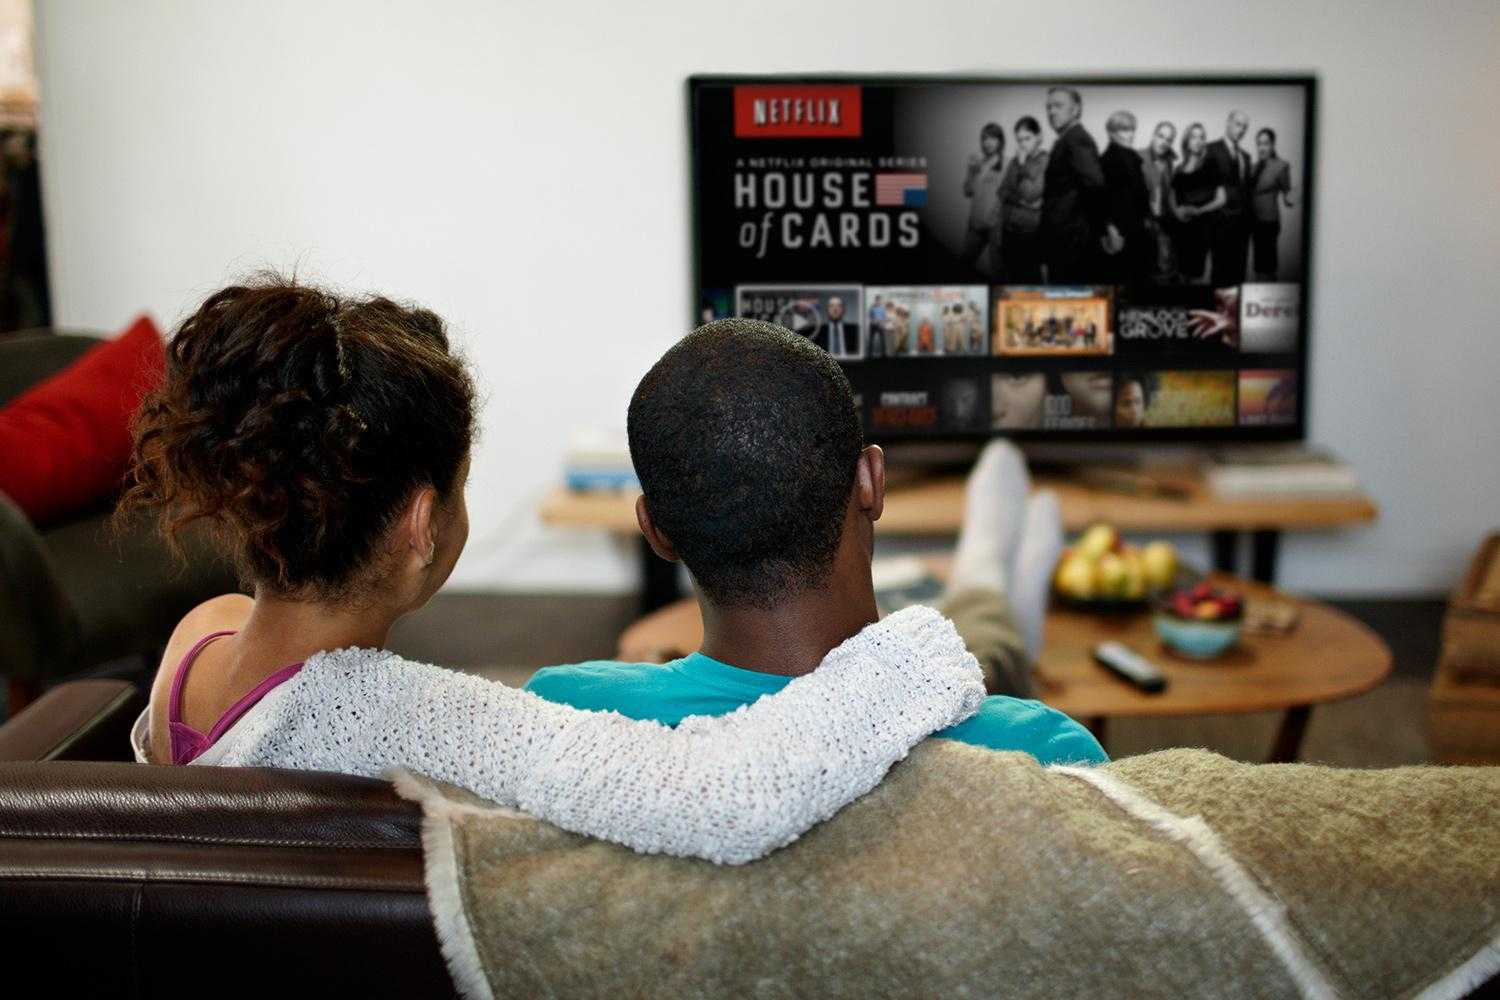 Как смотреть netflix на вашем телевизоре: 5 простых способов попробовать